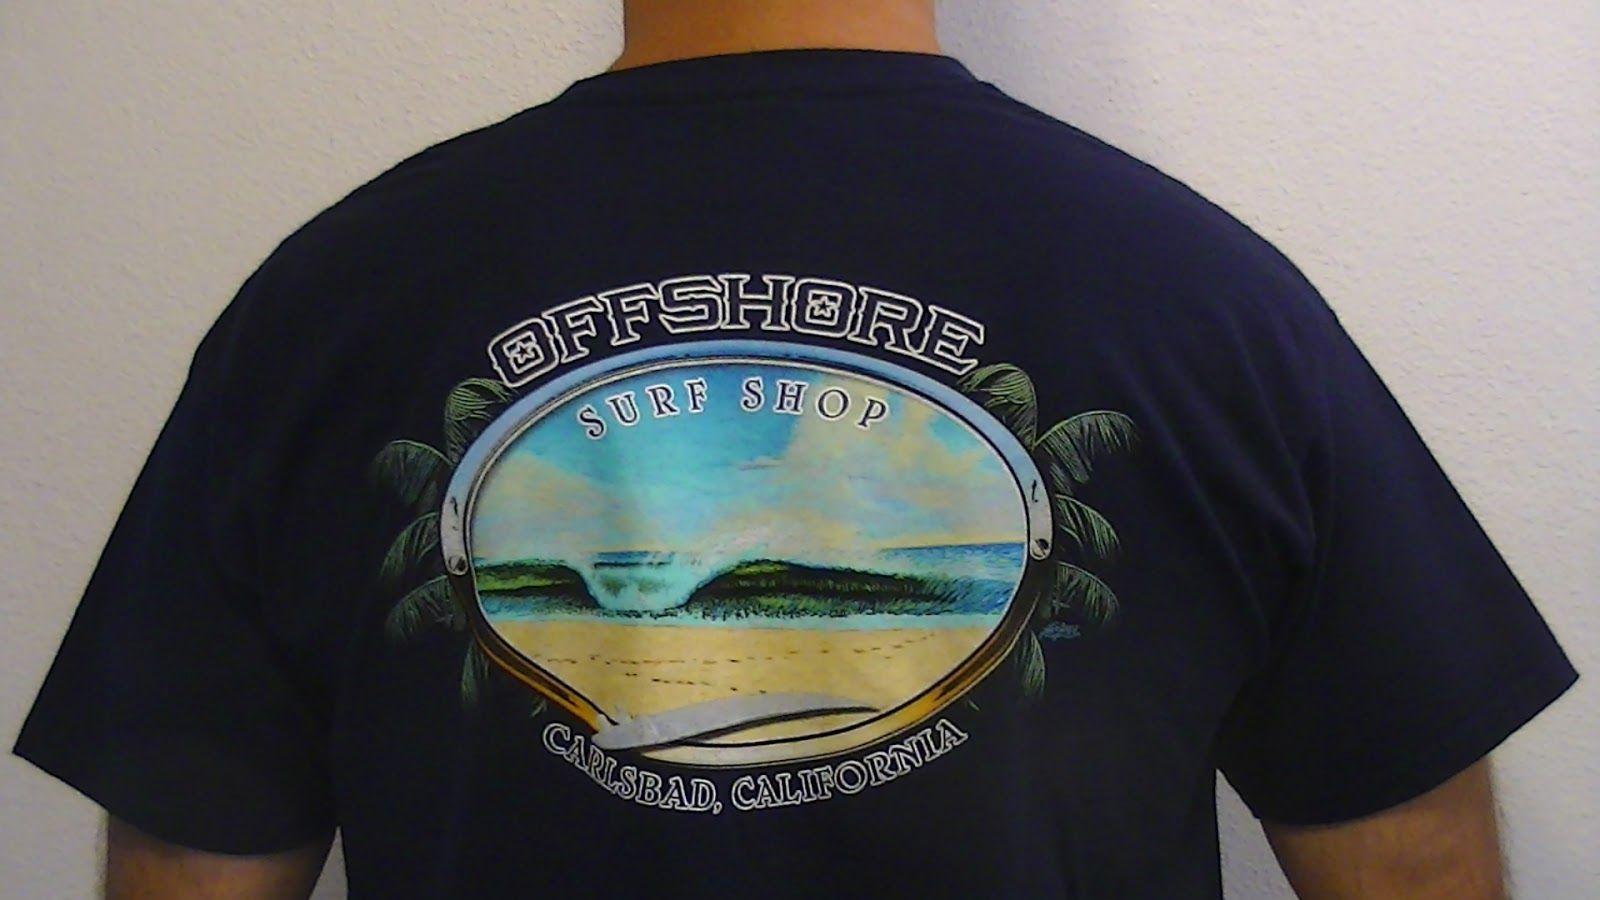 Surf Shop T-Shirt Road Trip: Offshore Surf Shop